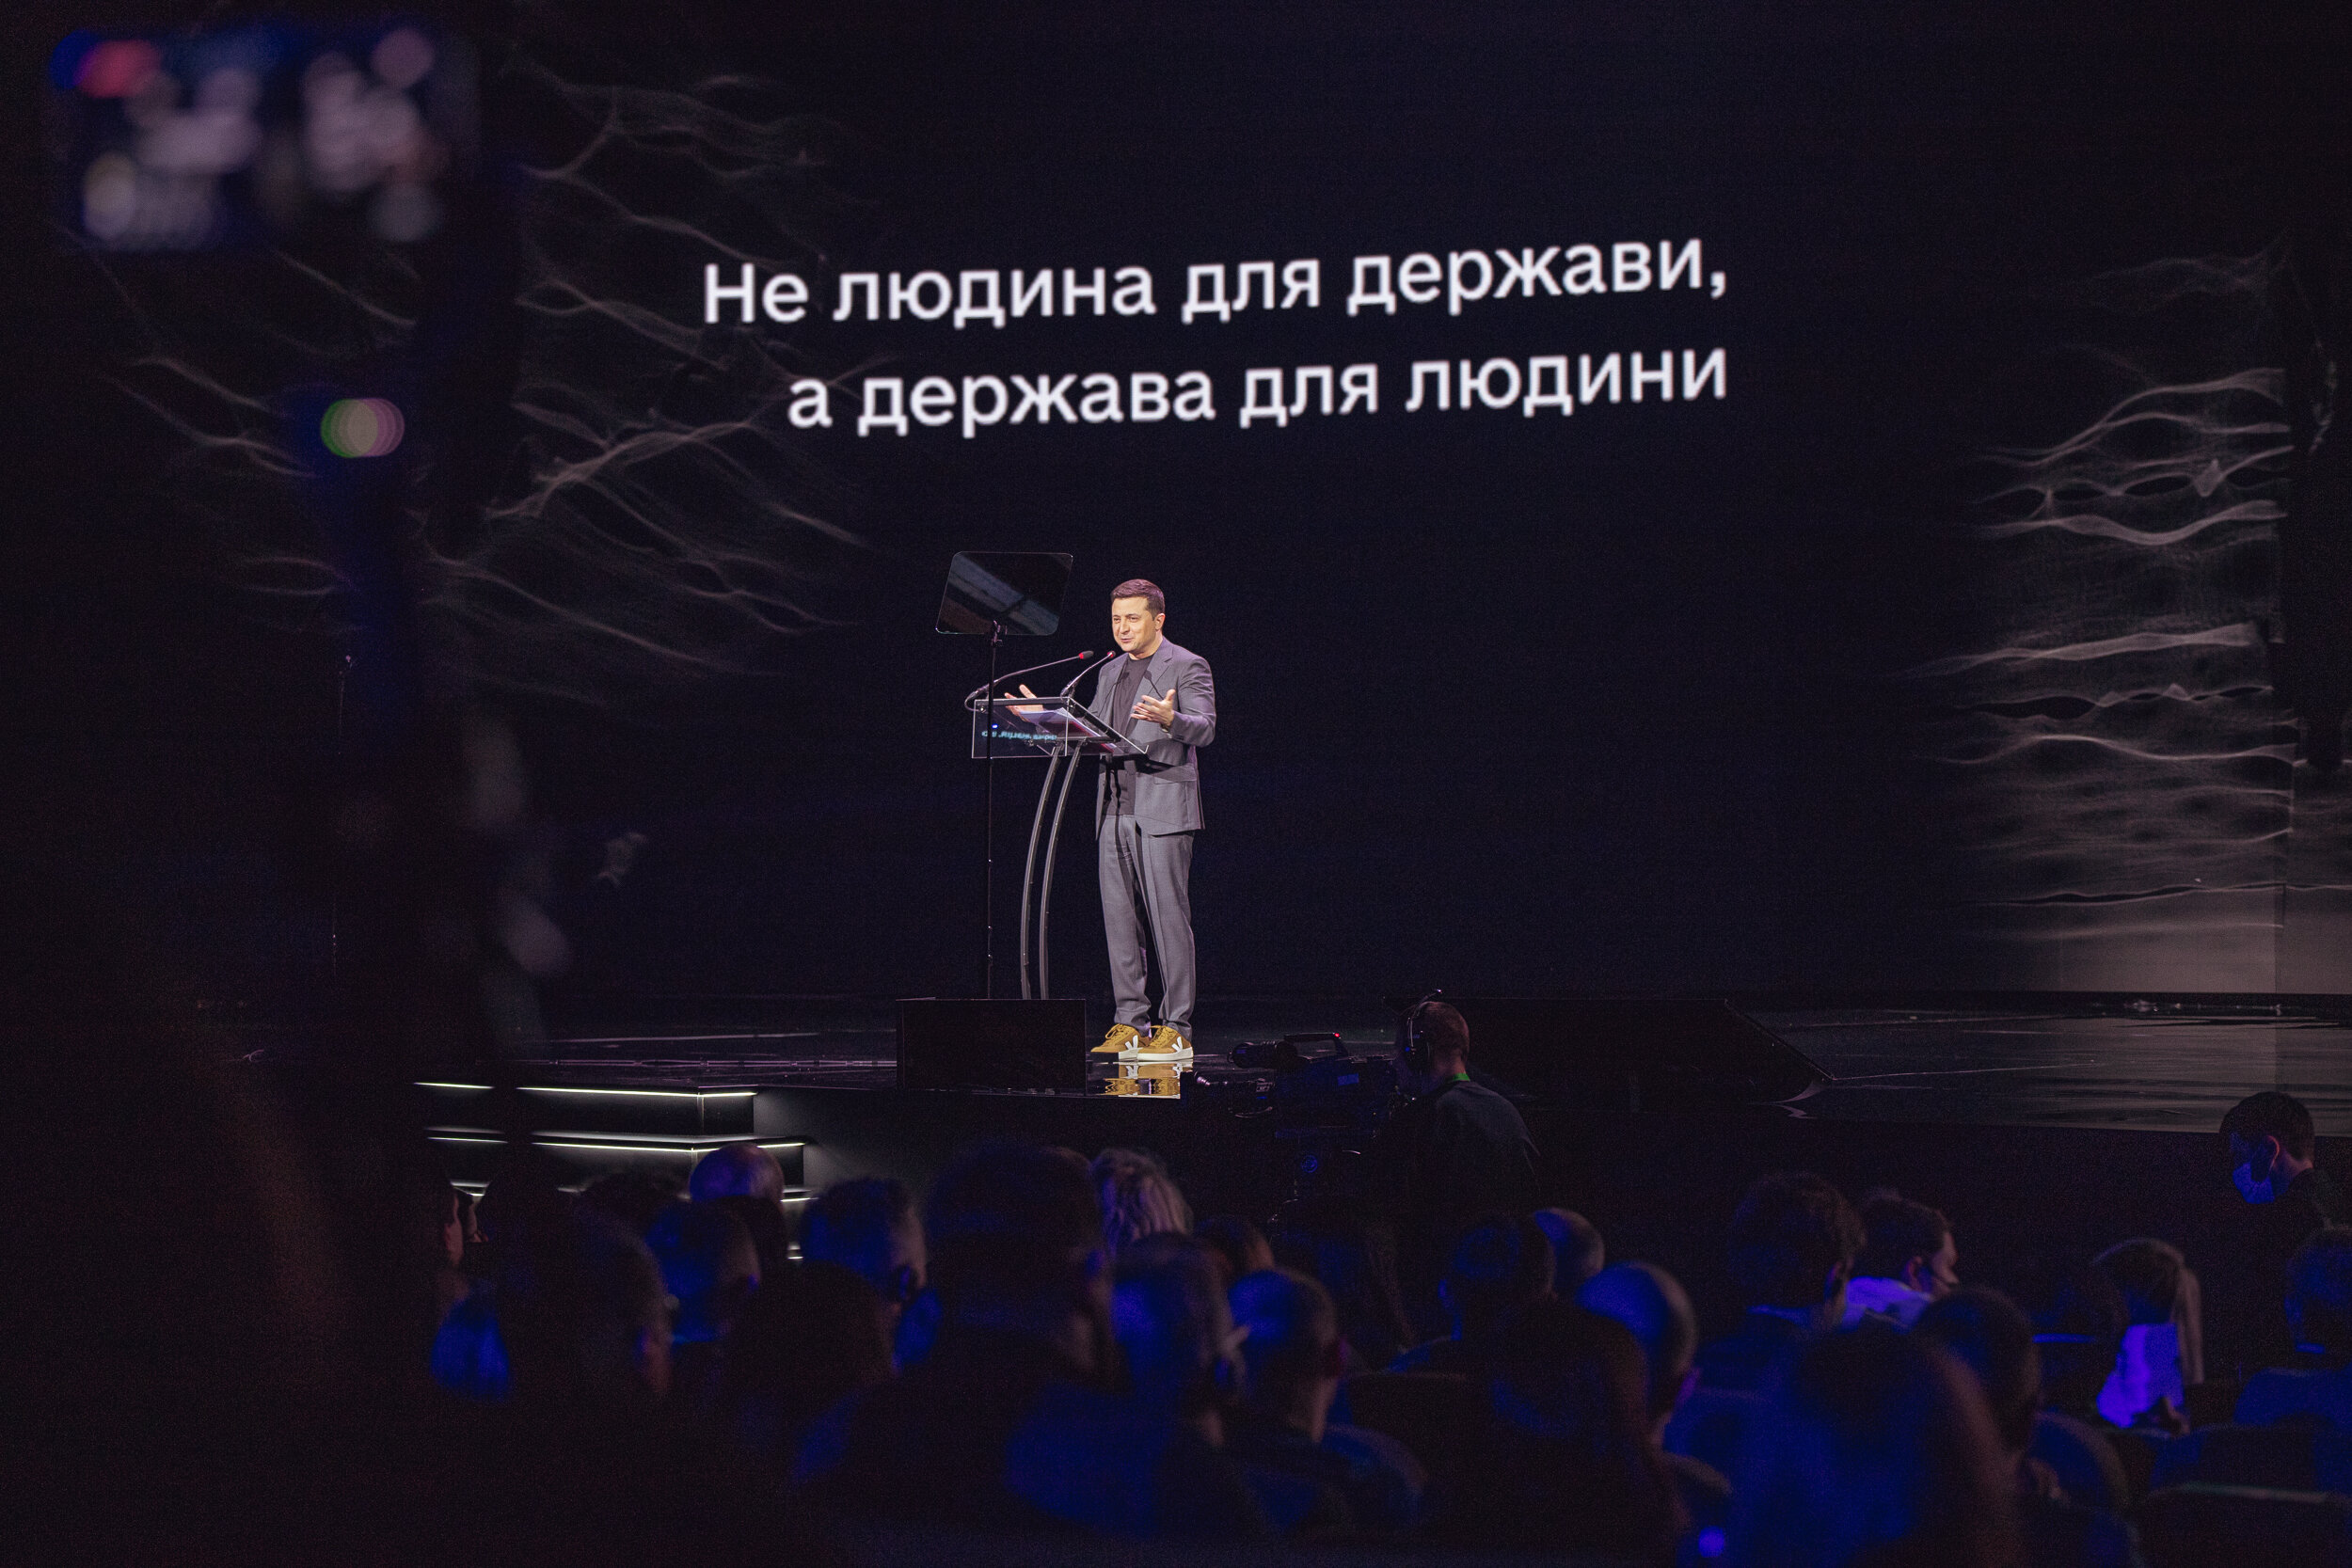 الرئيس الأوكراني يعلن عن إطلاق منصة Diia الرقمية الجديدة